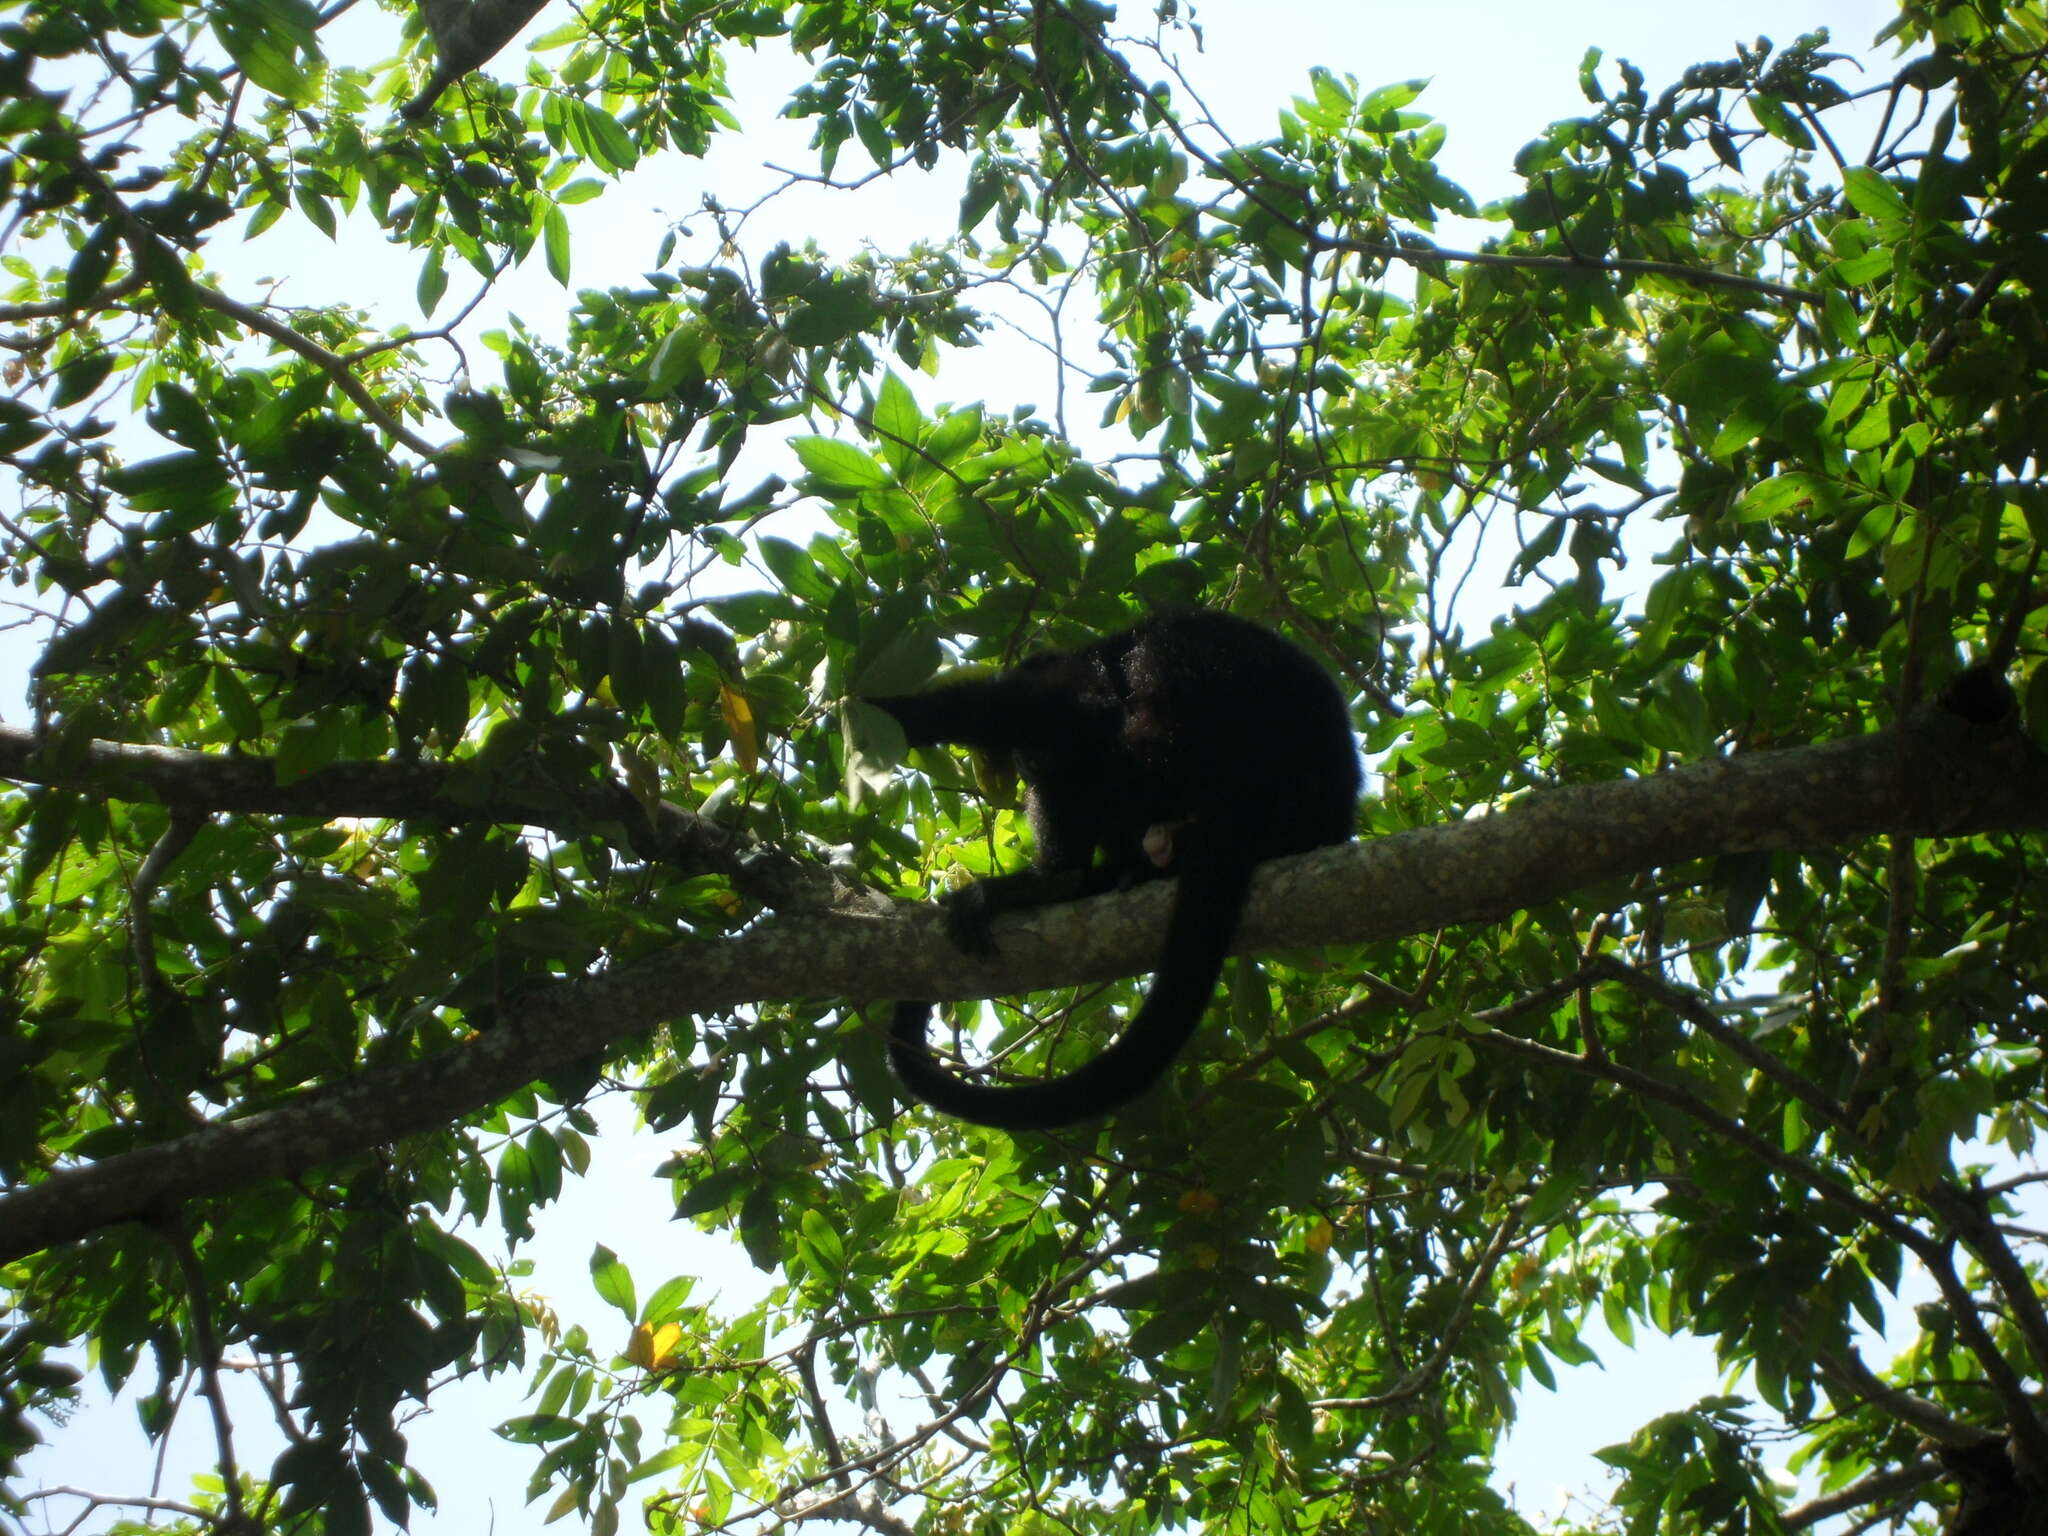 Image of Black Howling Monkey